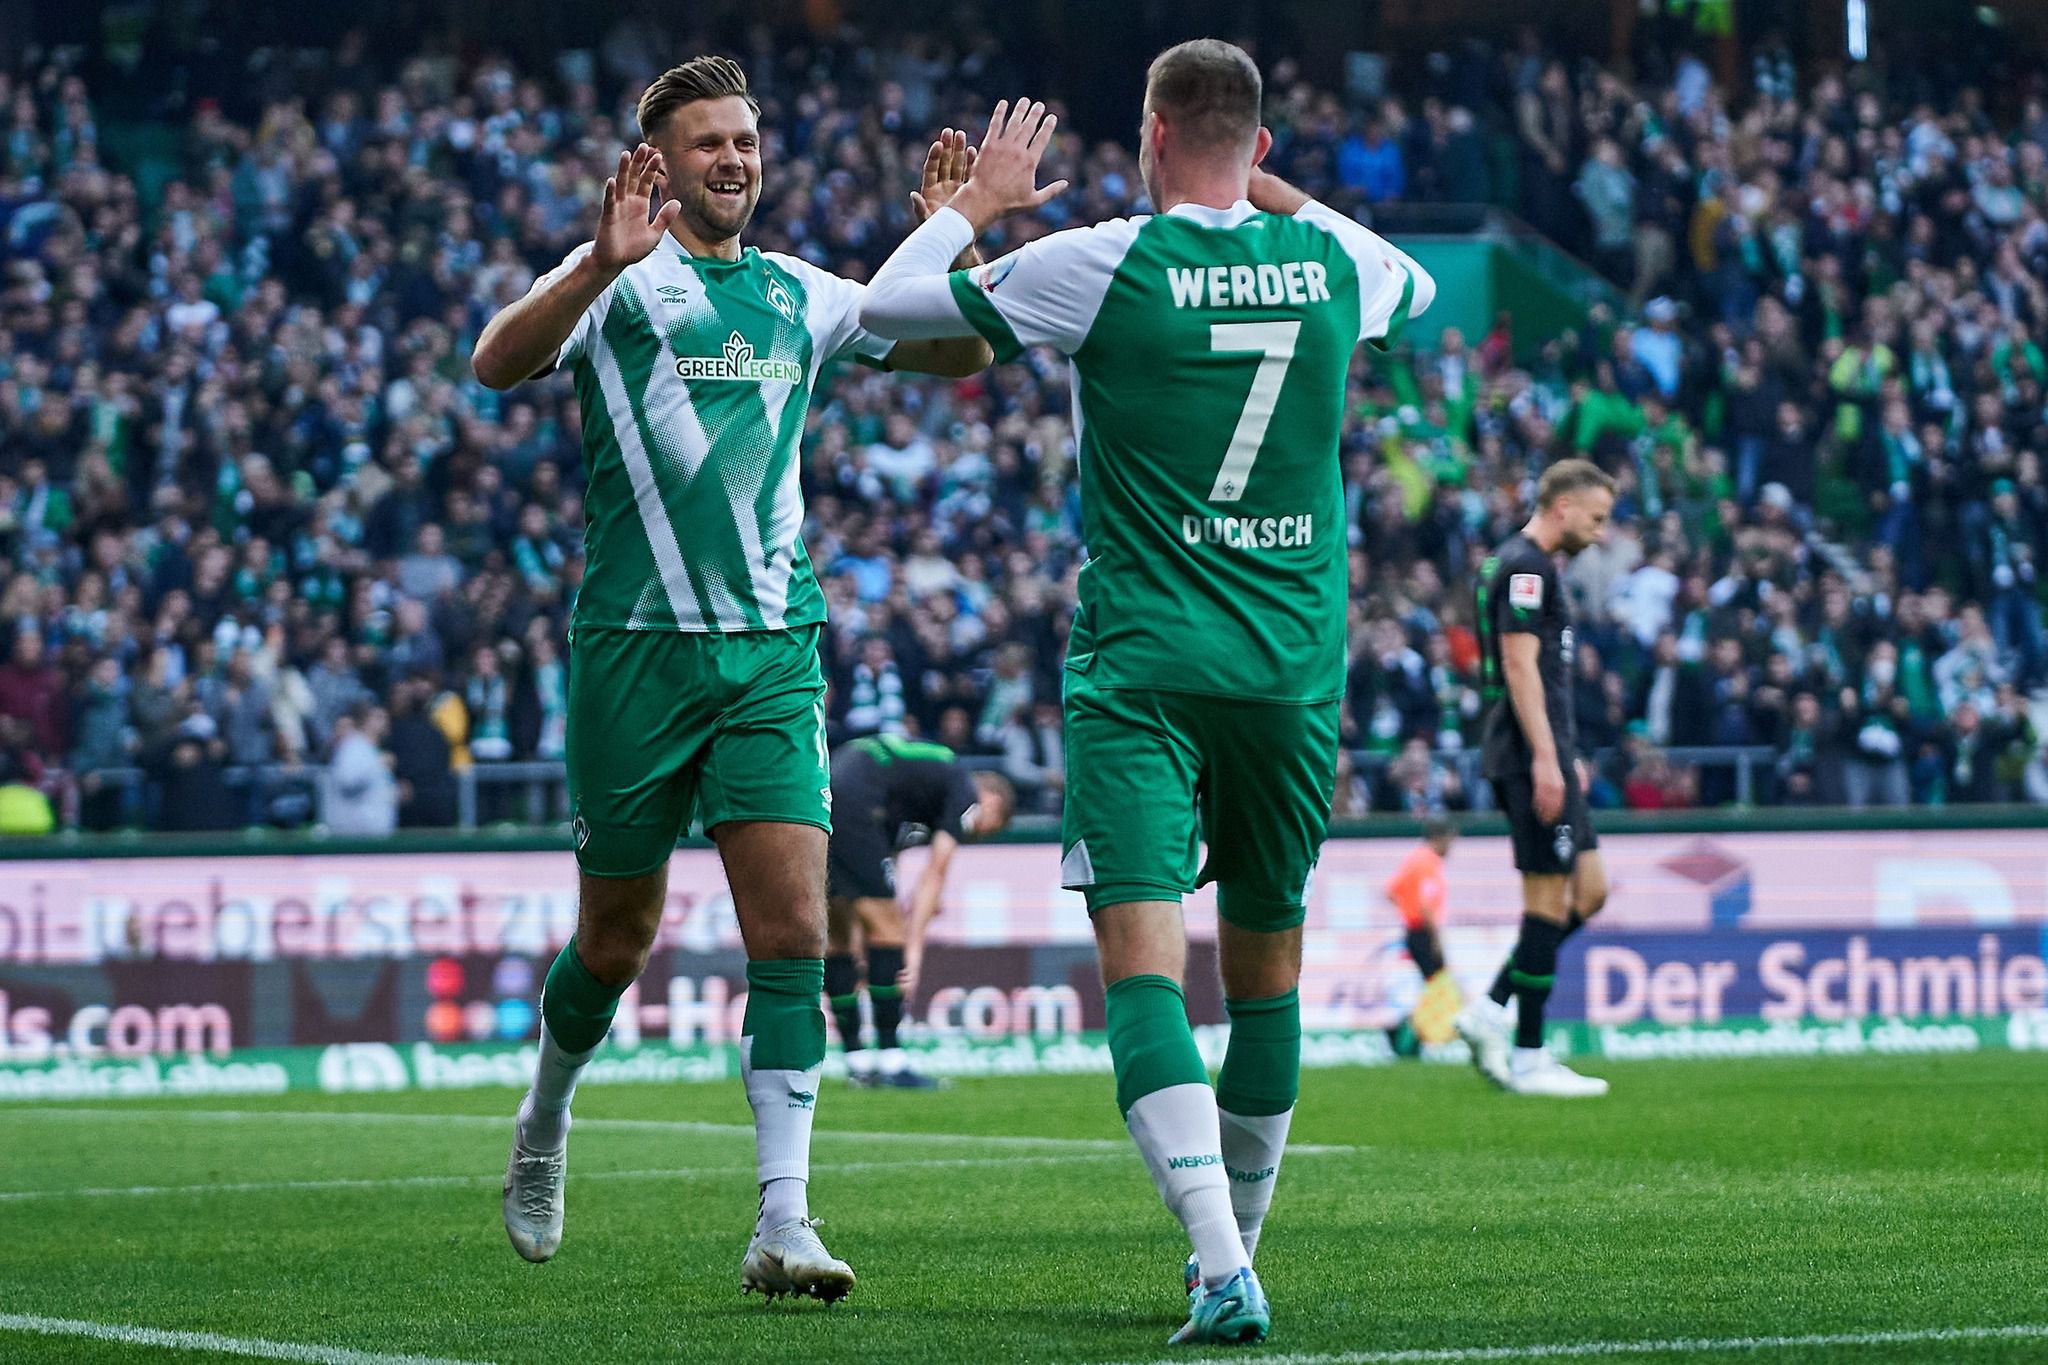 Az utolsó percekben szerezte meg a győzelmet a Werder Bremen a Hertha ellen